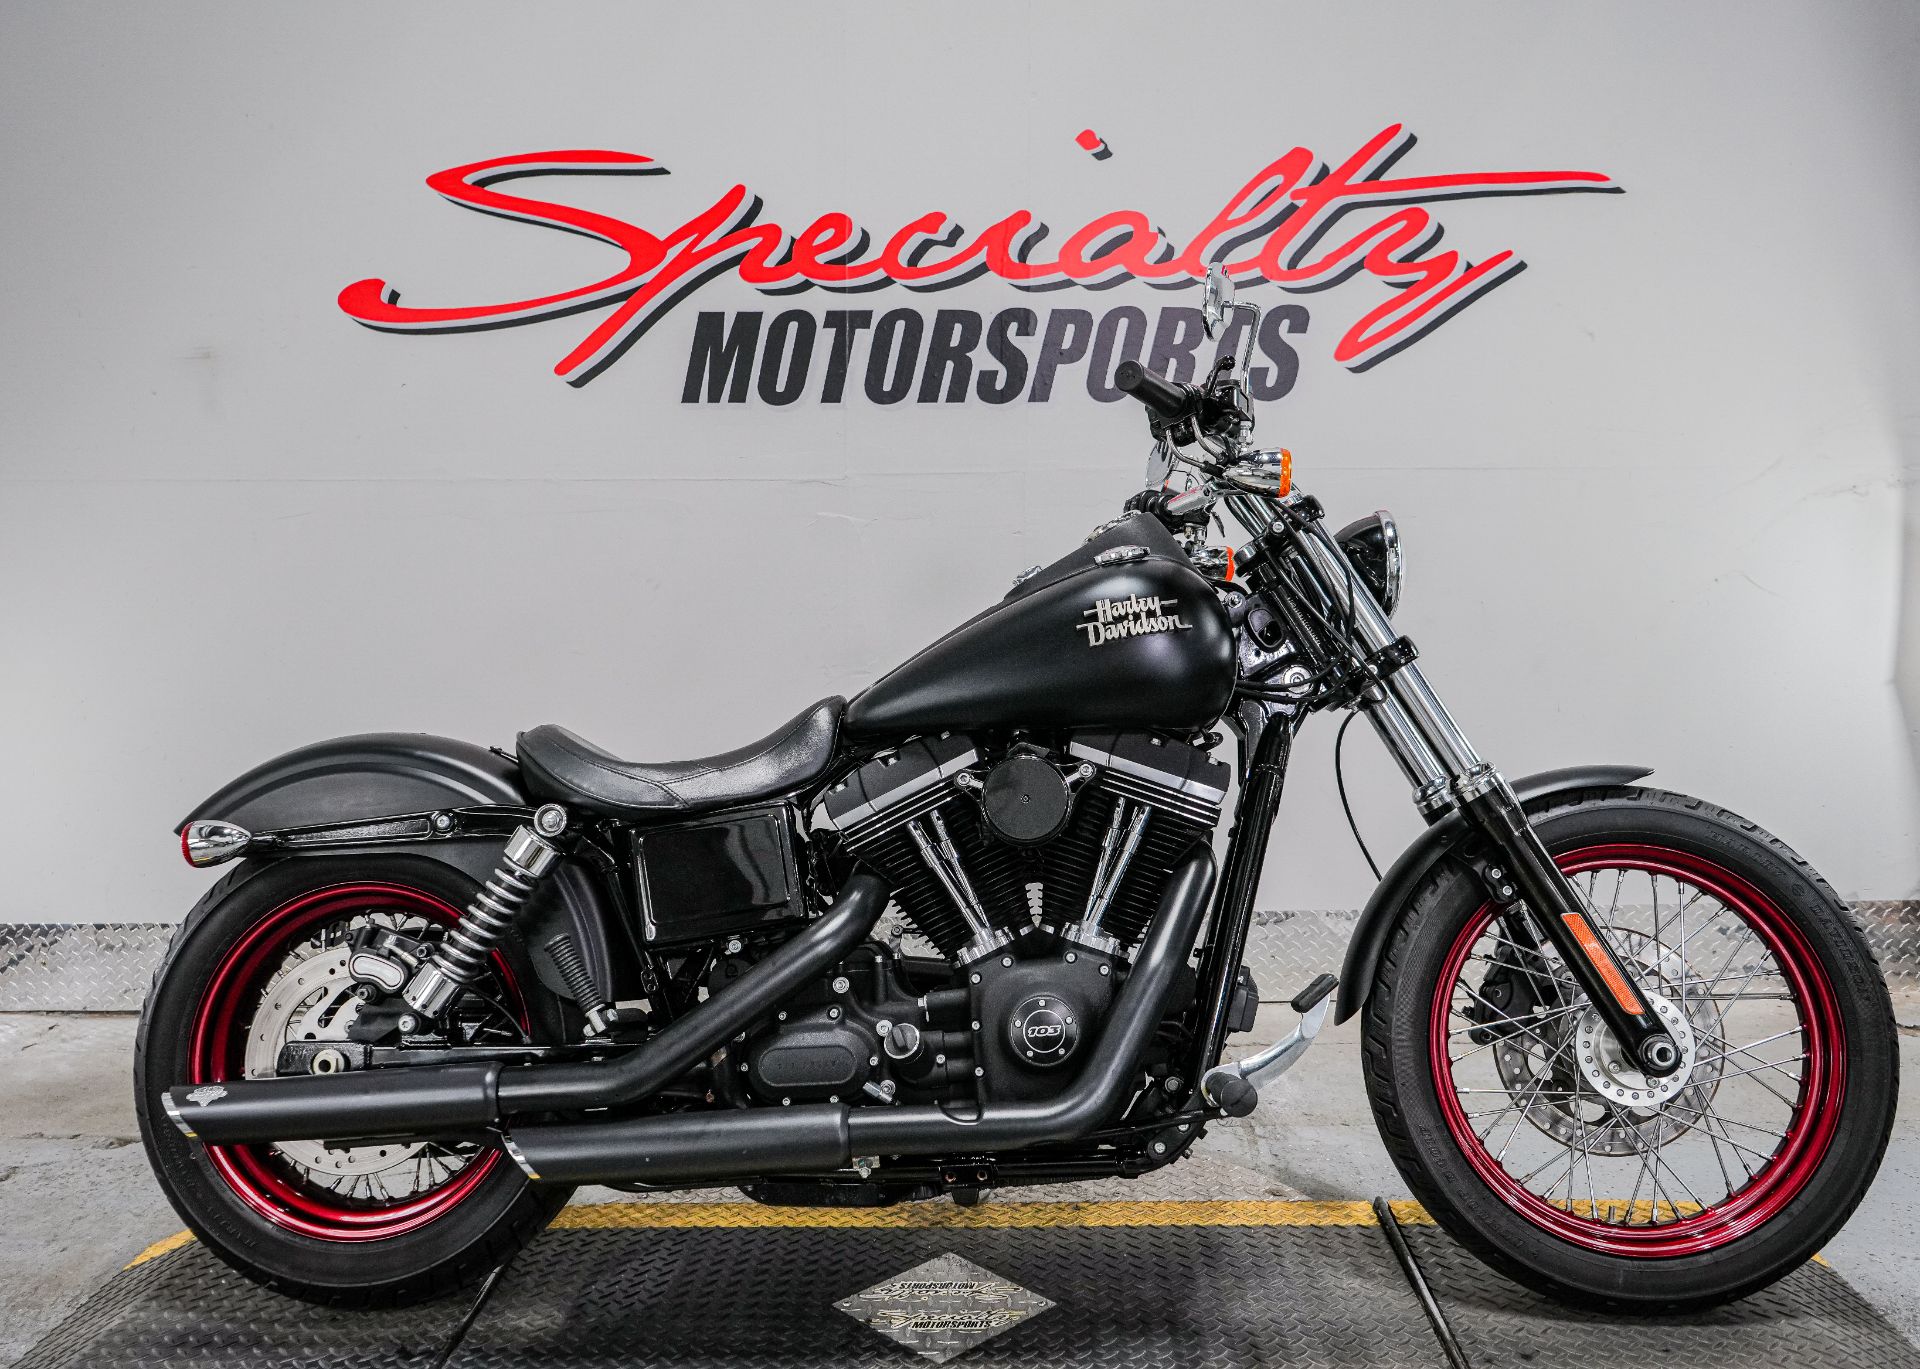 2014 Harley-Davidson Dyna® Street Bob® in Sacramento, California - Photo 1